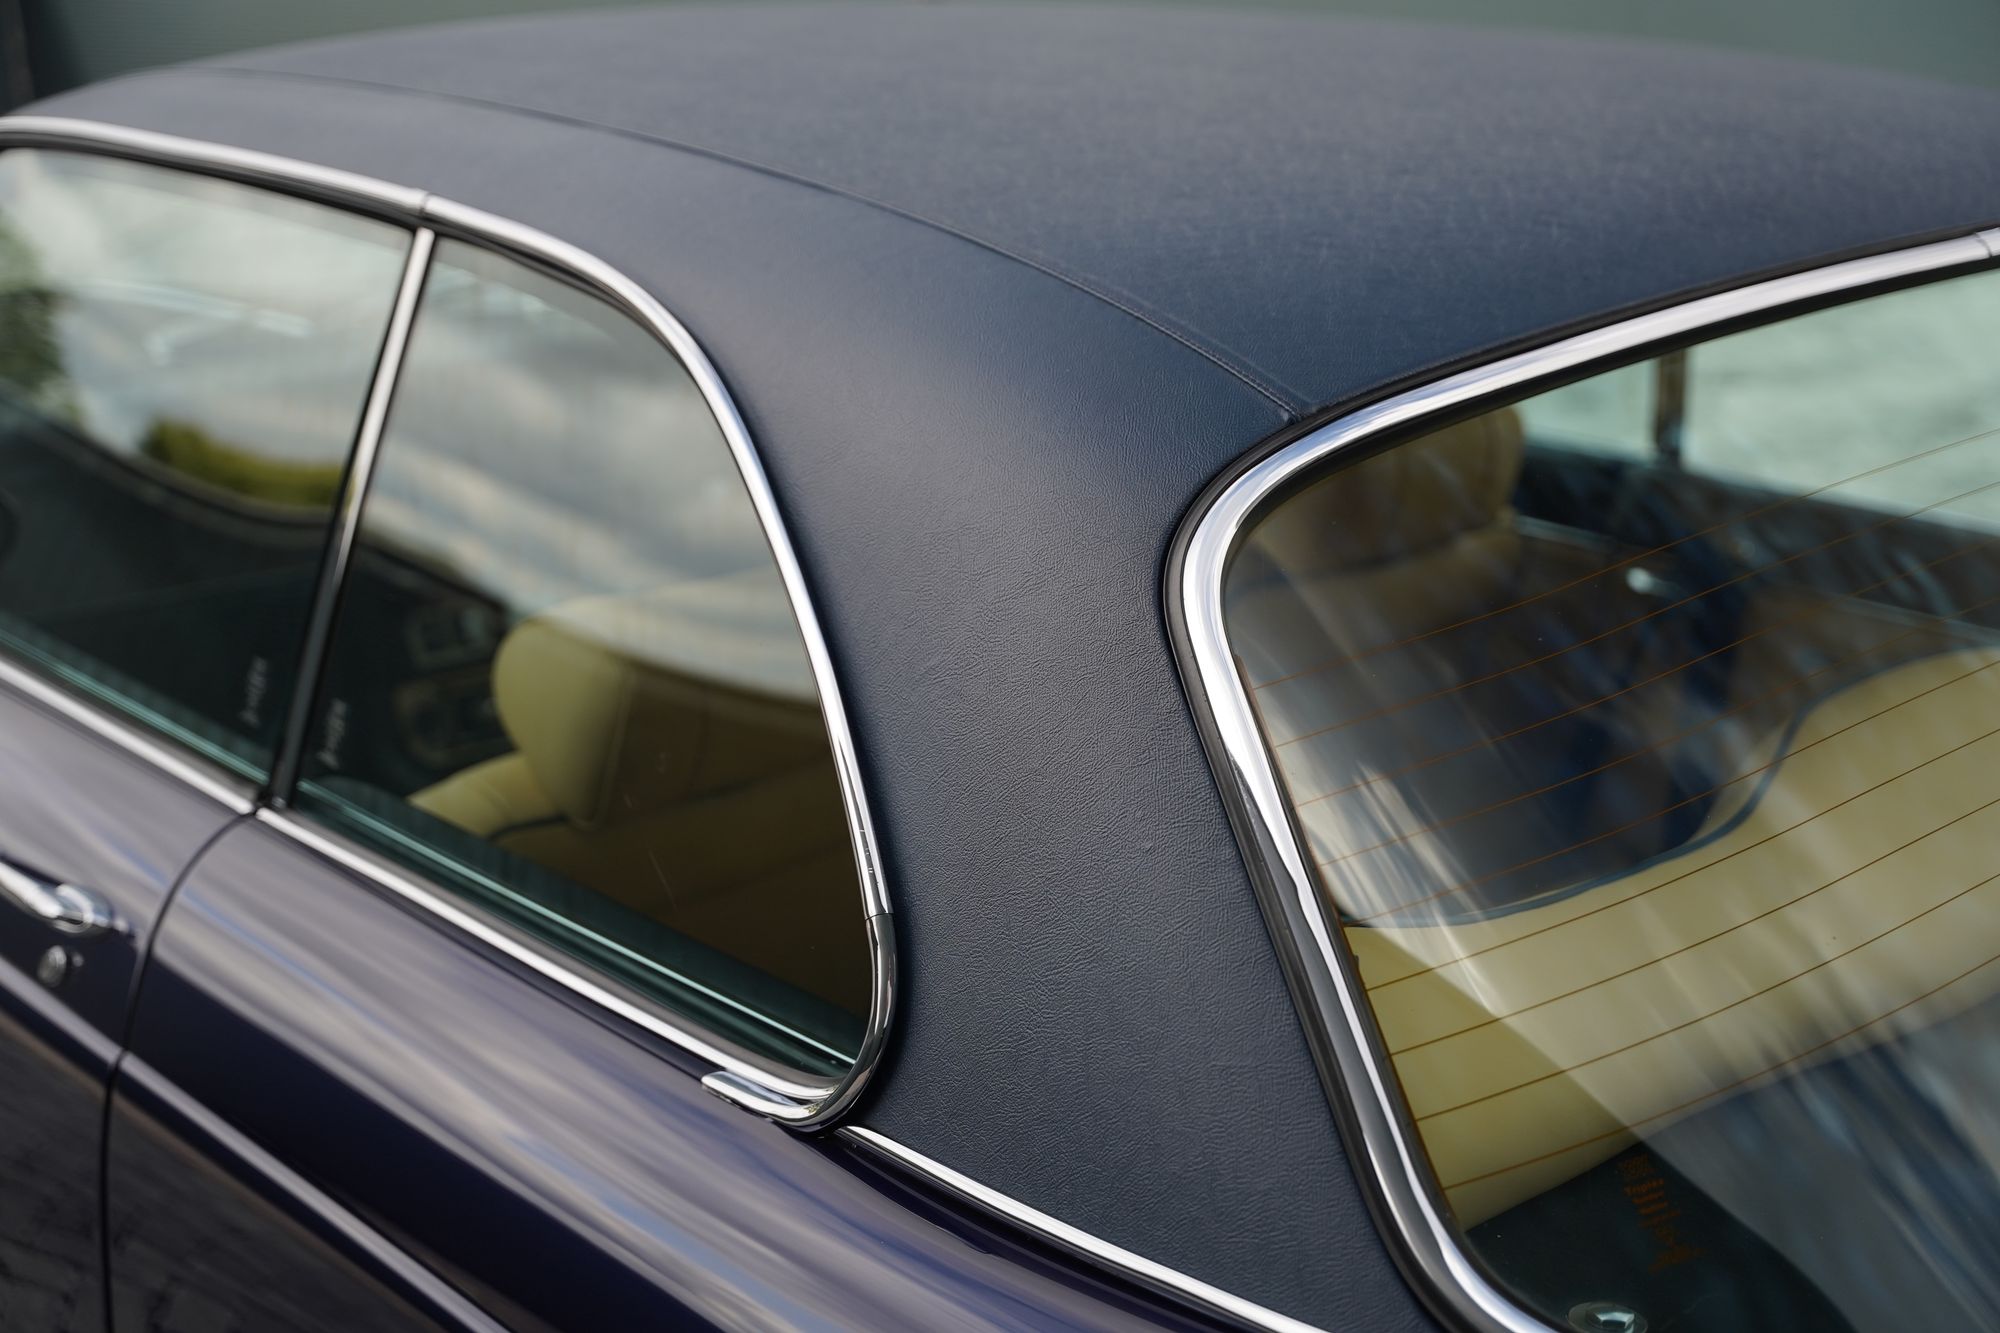 1975 Daimler Sovereign XJ6 Two-Door Coupe